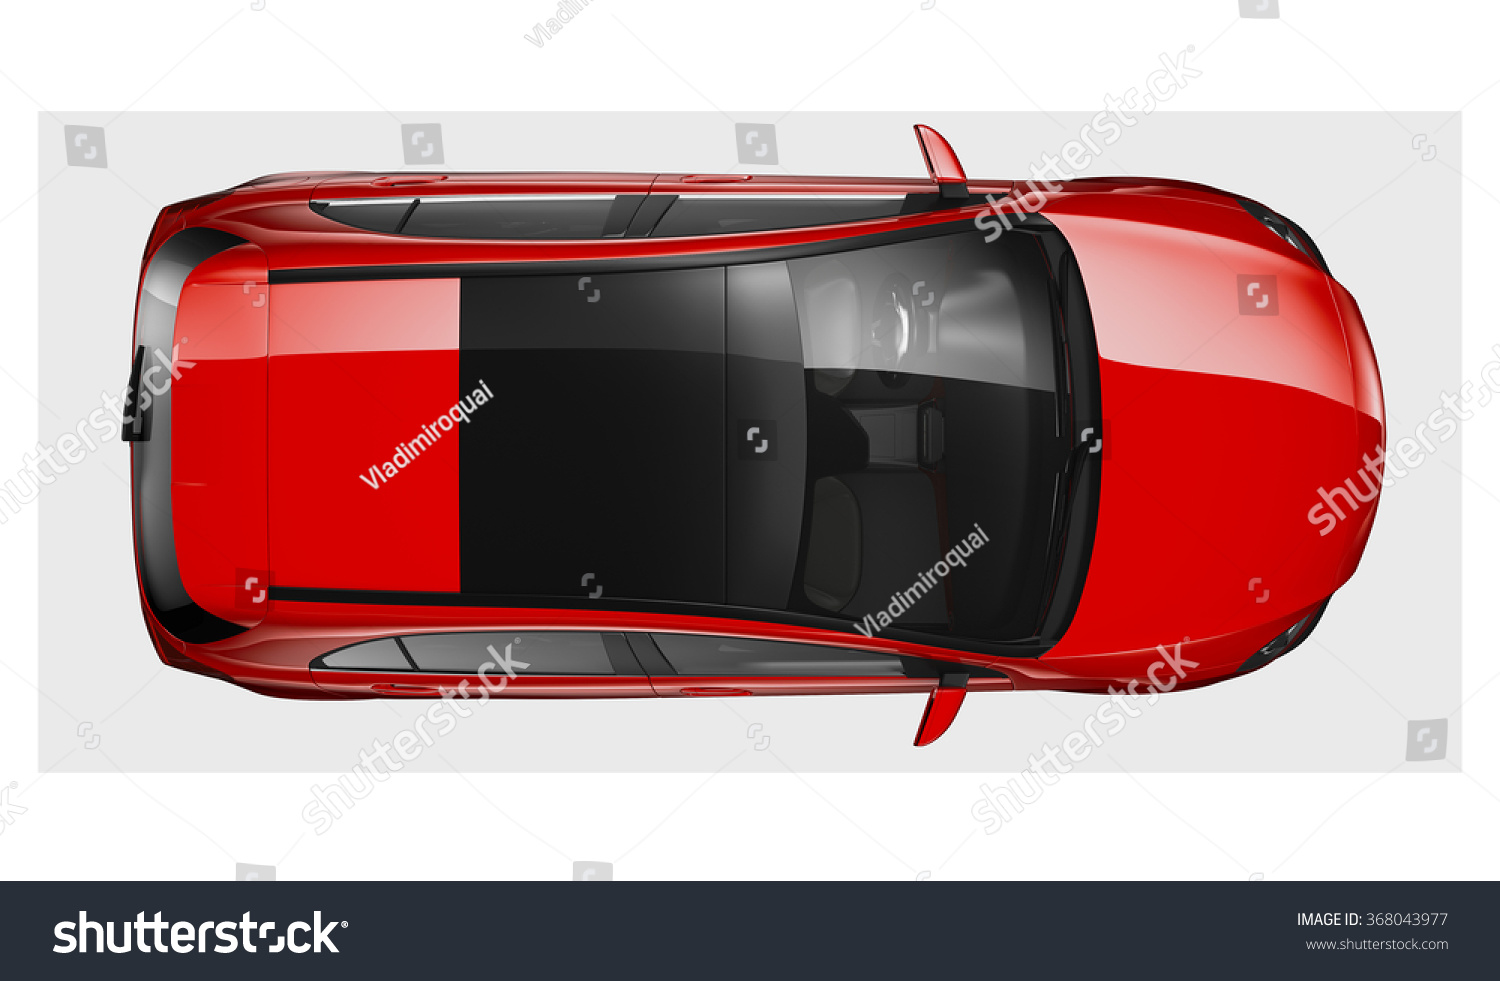 赤い一般車 平面図 のイラスト素材